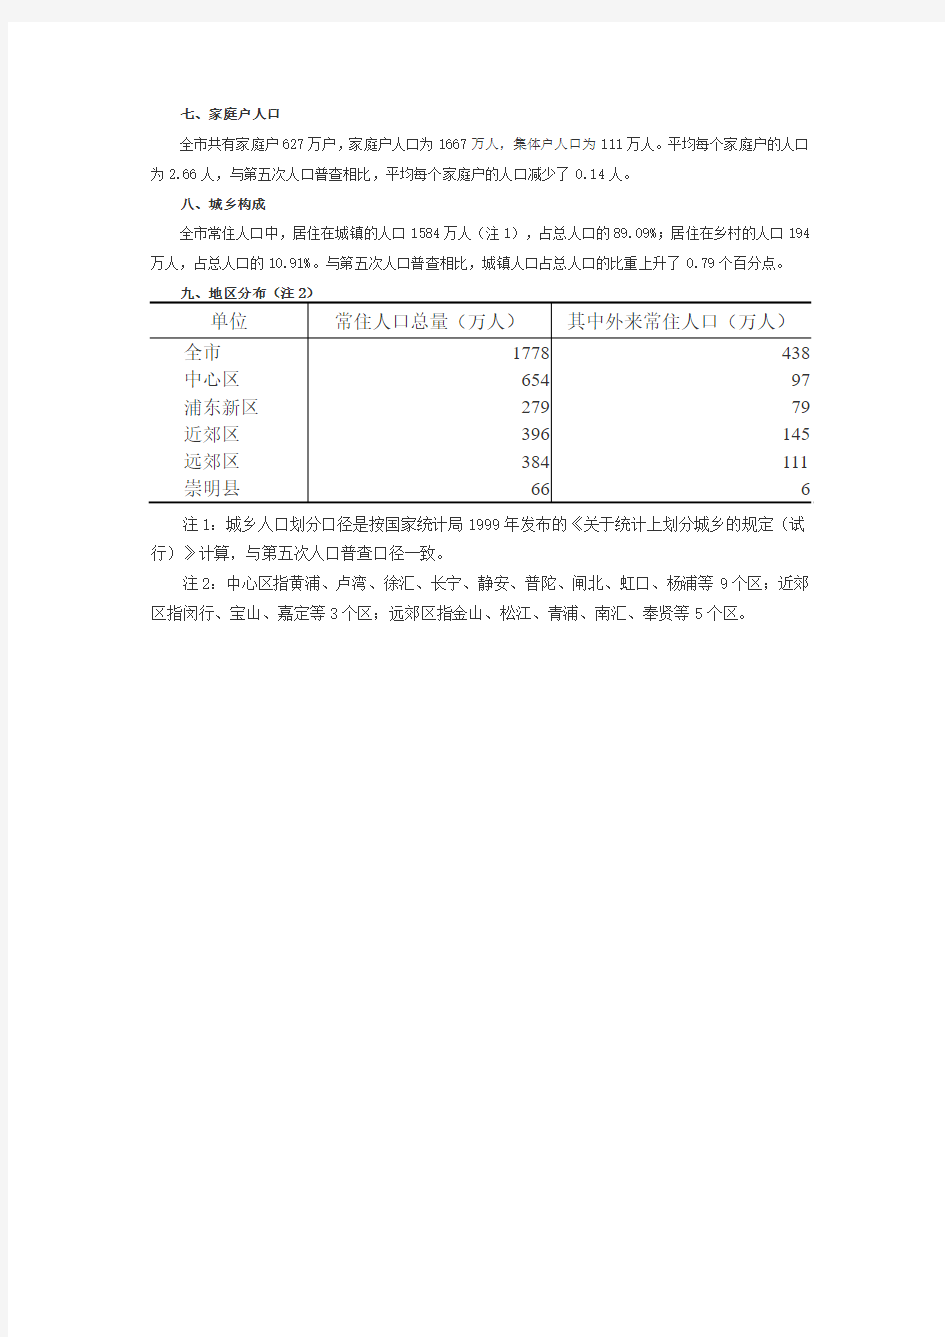 2005年上海市1%人口抽样调查主要数据公报